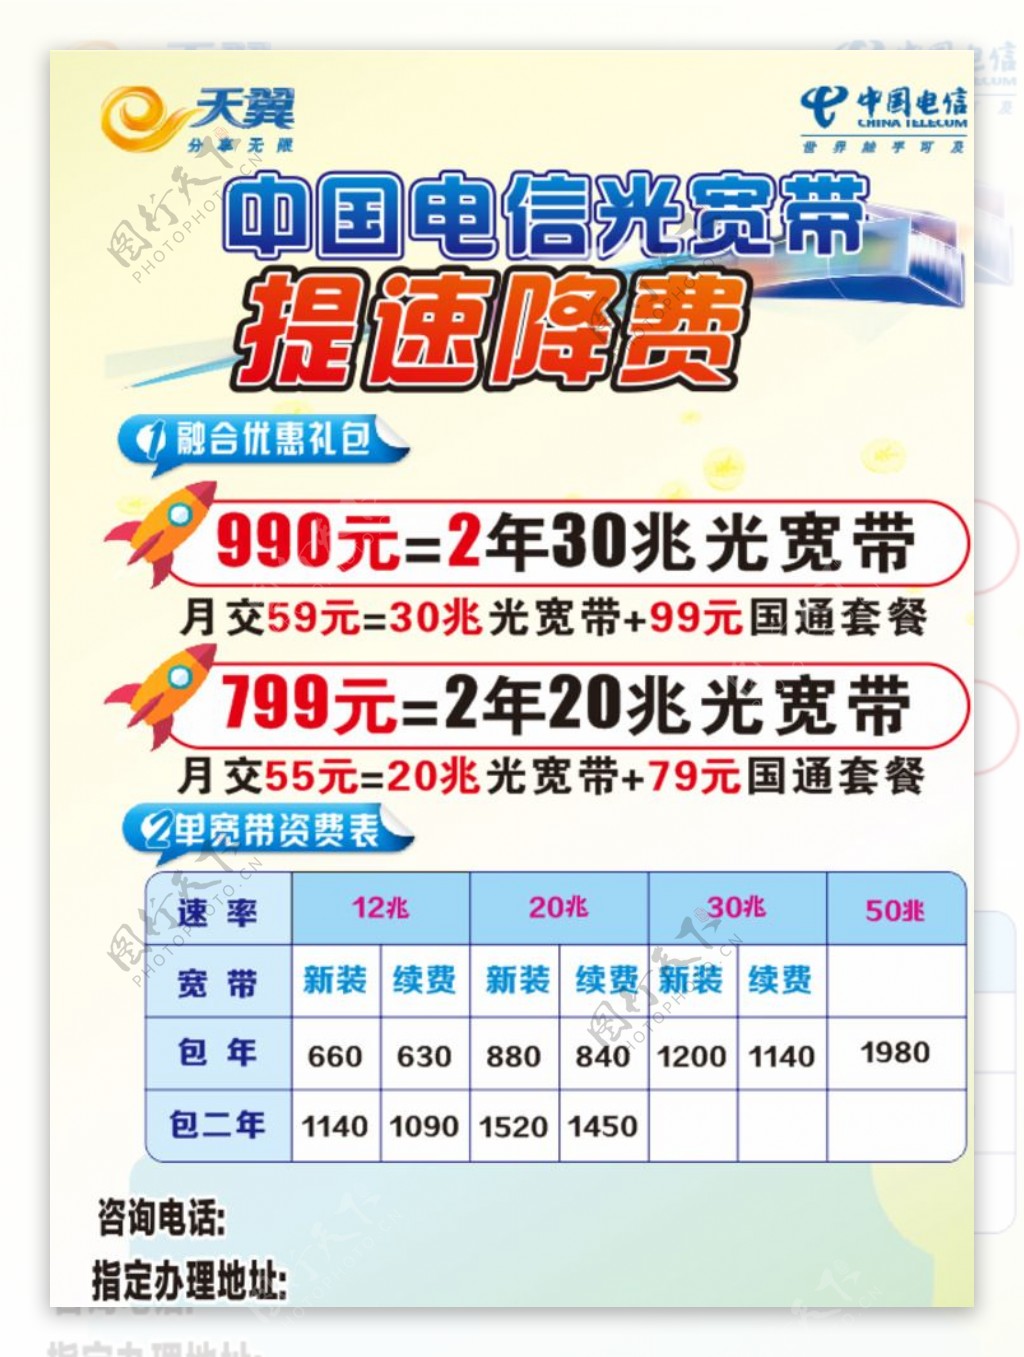 中国电信光宽带提速降费宣传单